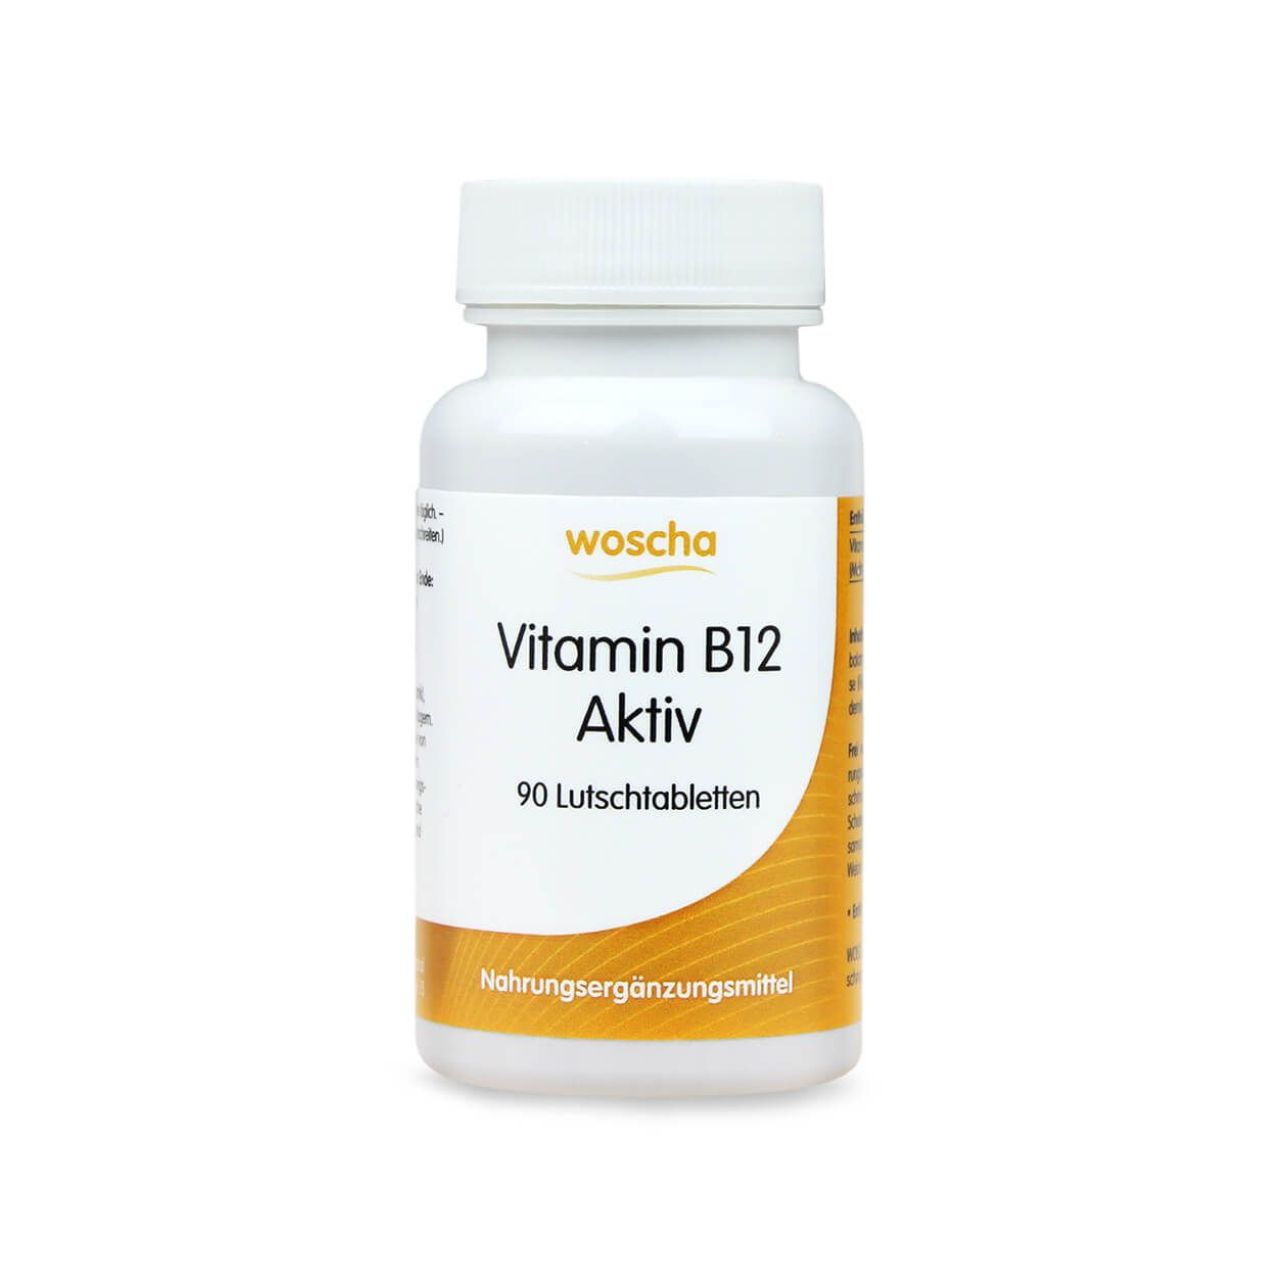 Woscha Vitamin B12 Aktiv von podo medi beinhaltet 90 Lutschtabletten